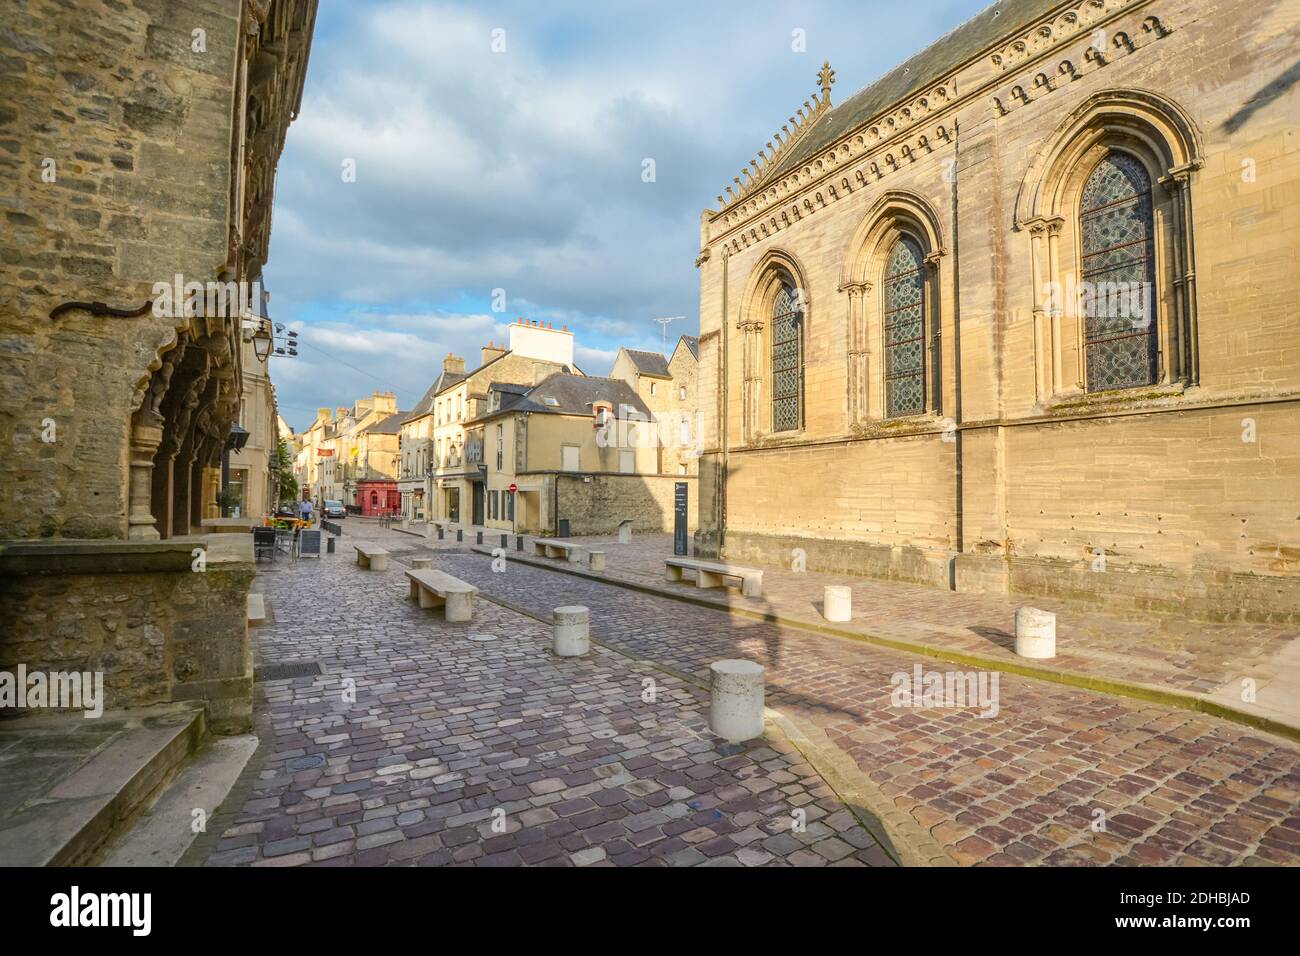 Rue Pavée et maisons à colombages sur la route médiévale en face de la cathédrale de Bayeux dans la ville de Bayeux, France en Normandie Banque D'Images